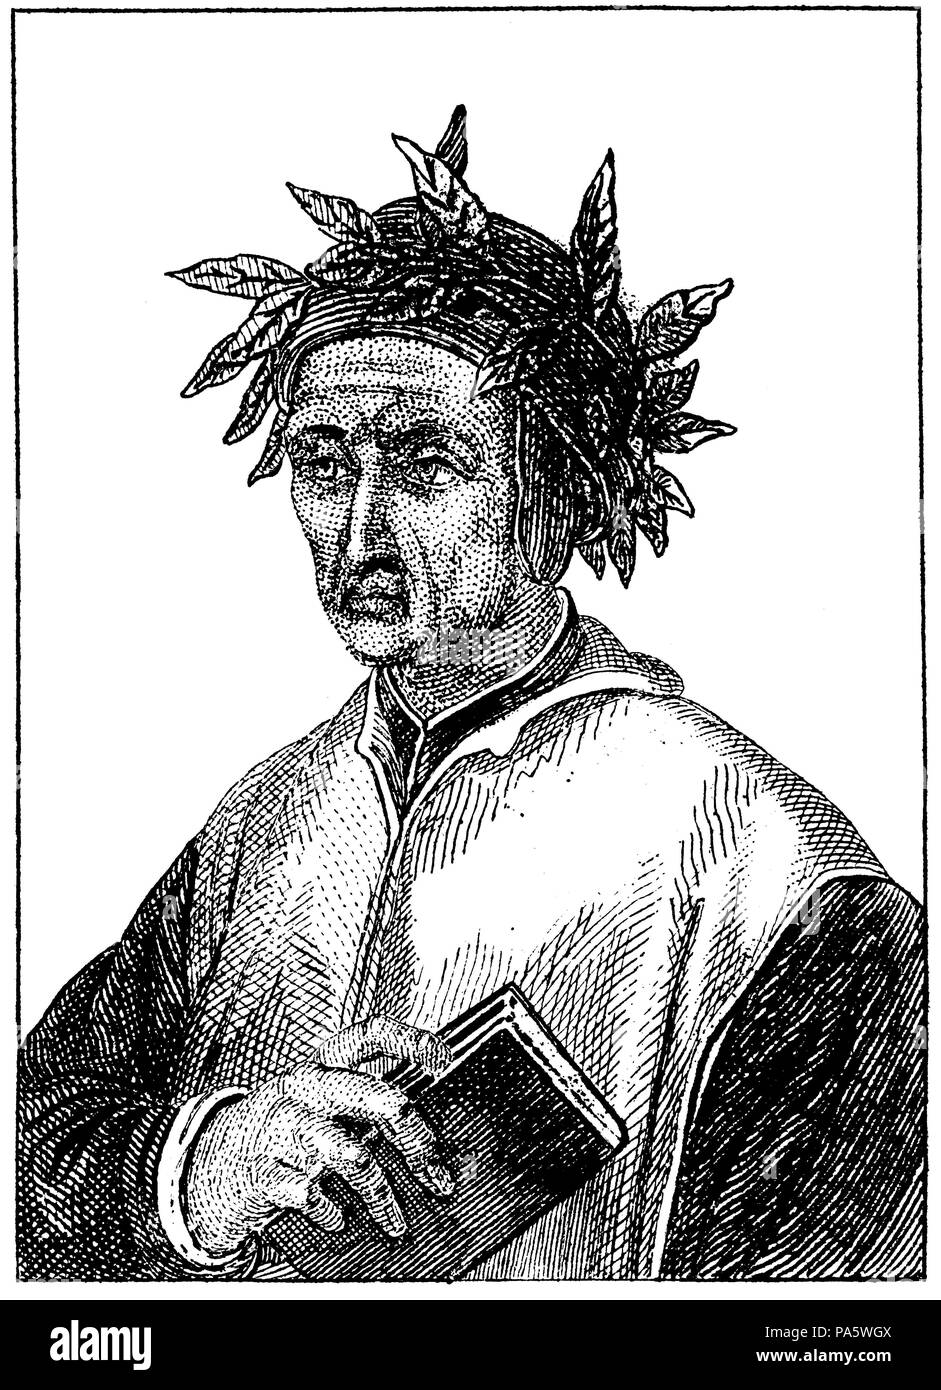 Dante Alighieri (1265-1321), poeta italiano. Grabado de 1840. Stock Photo